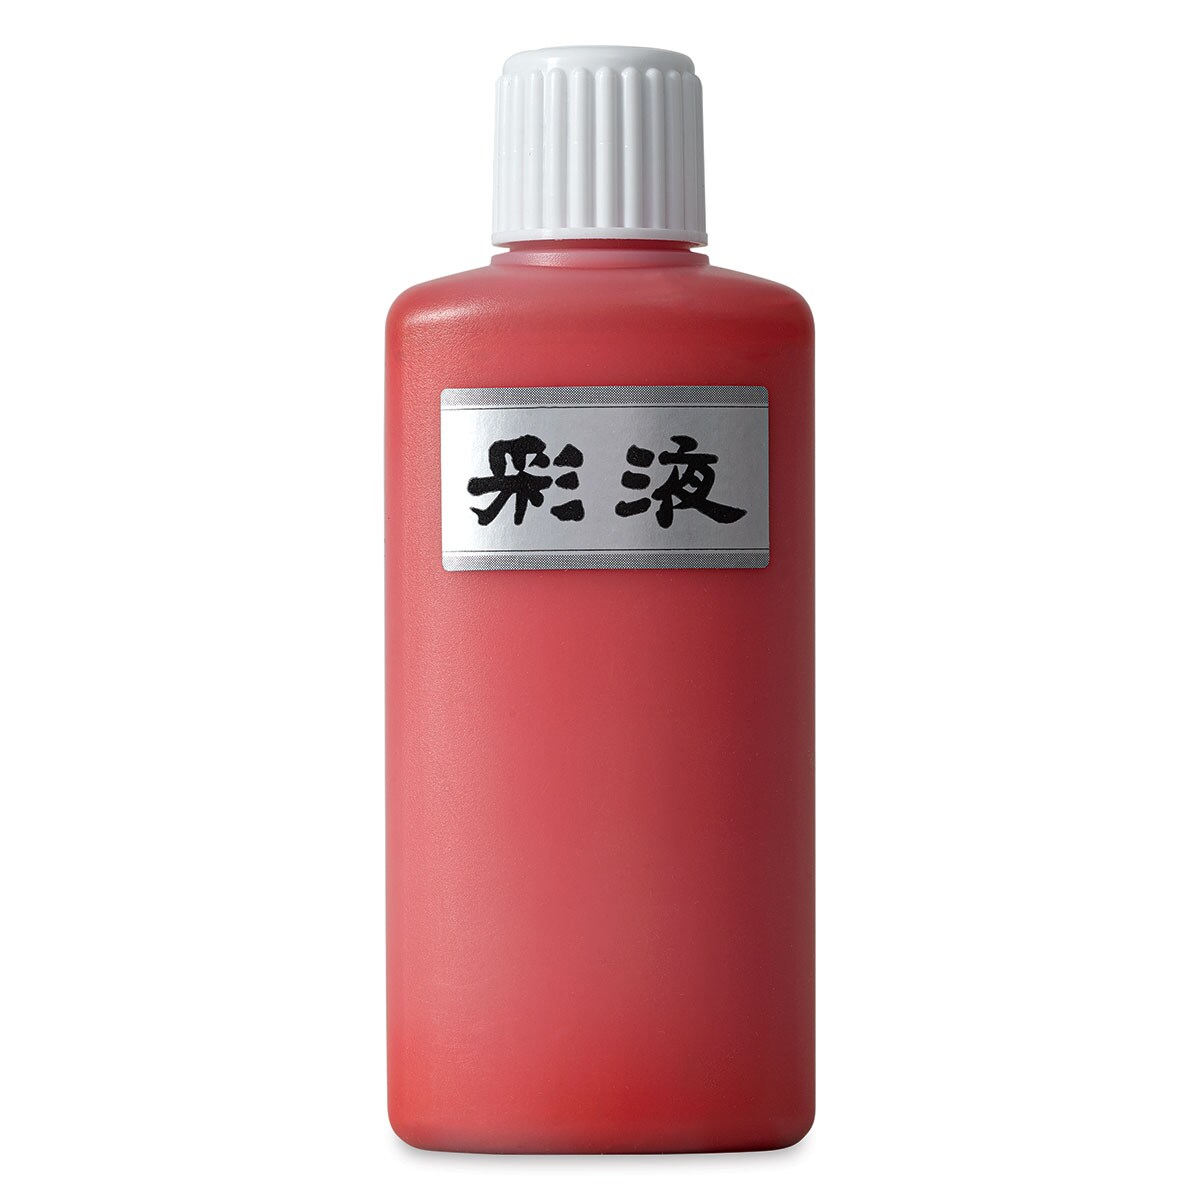 Aitoh Boku-Undo Suminagashi Marbling Ink - Red, 6.75 oz, Bottle